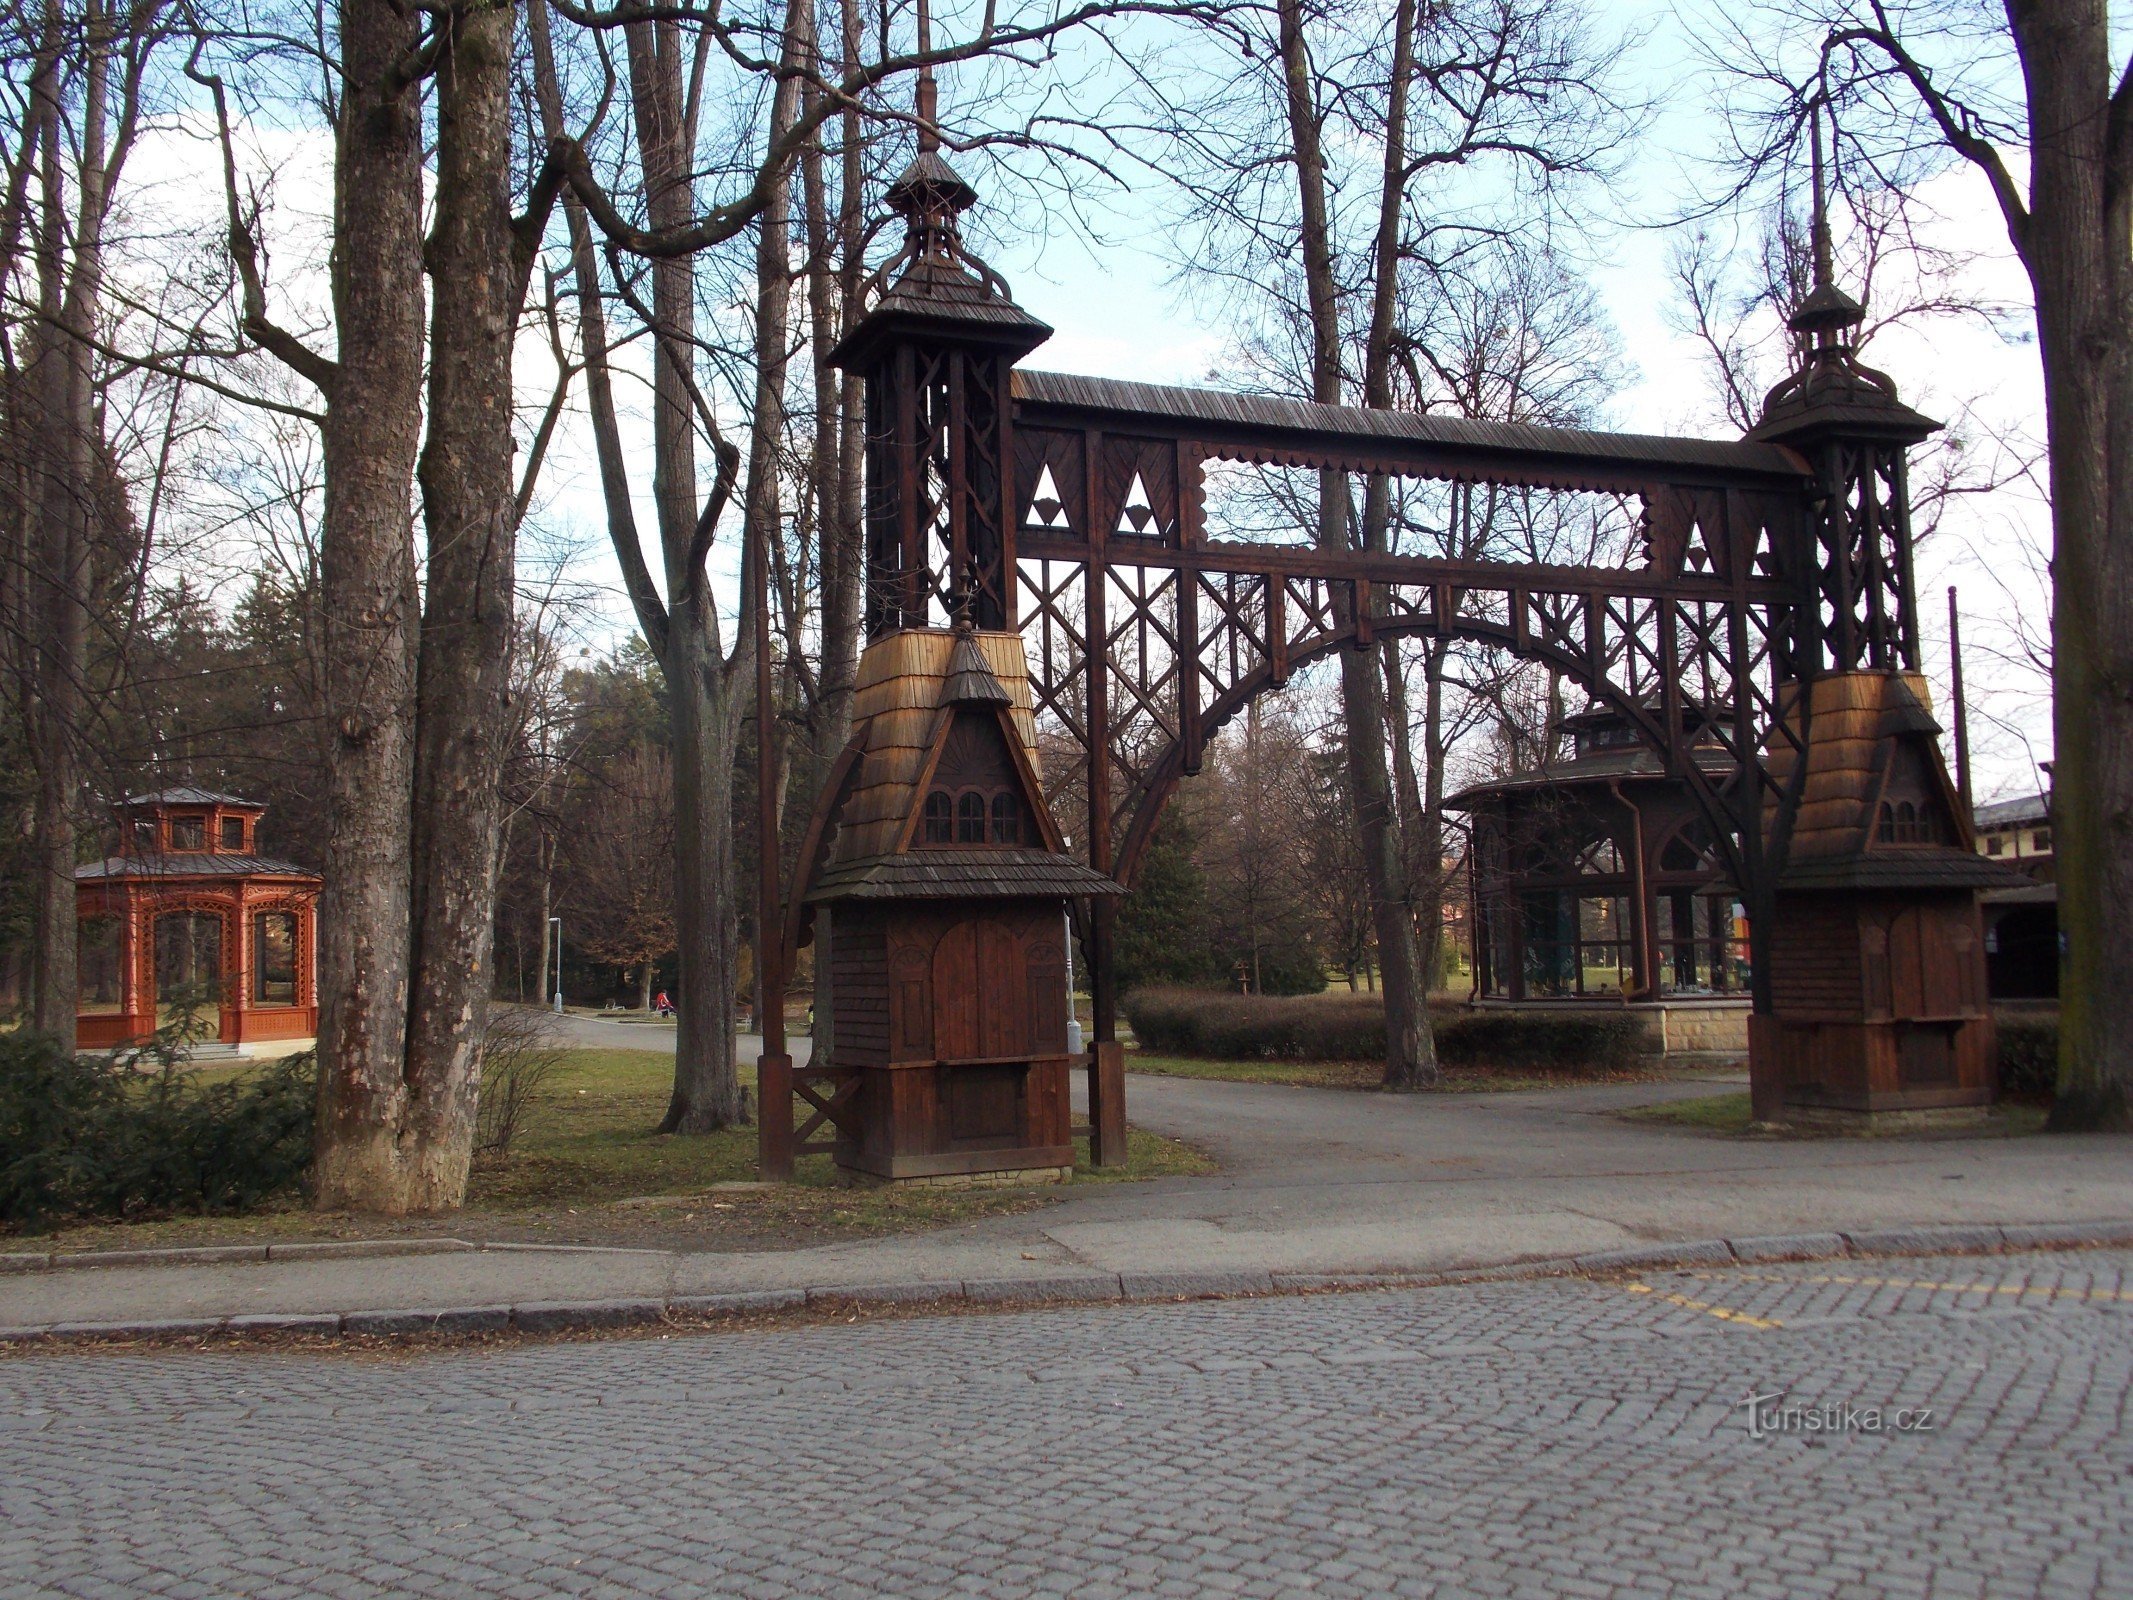 Una passeggiata nel parco termale di Rožnov pod Radhoštěm